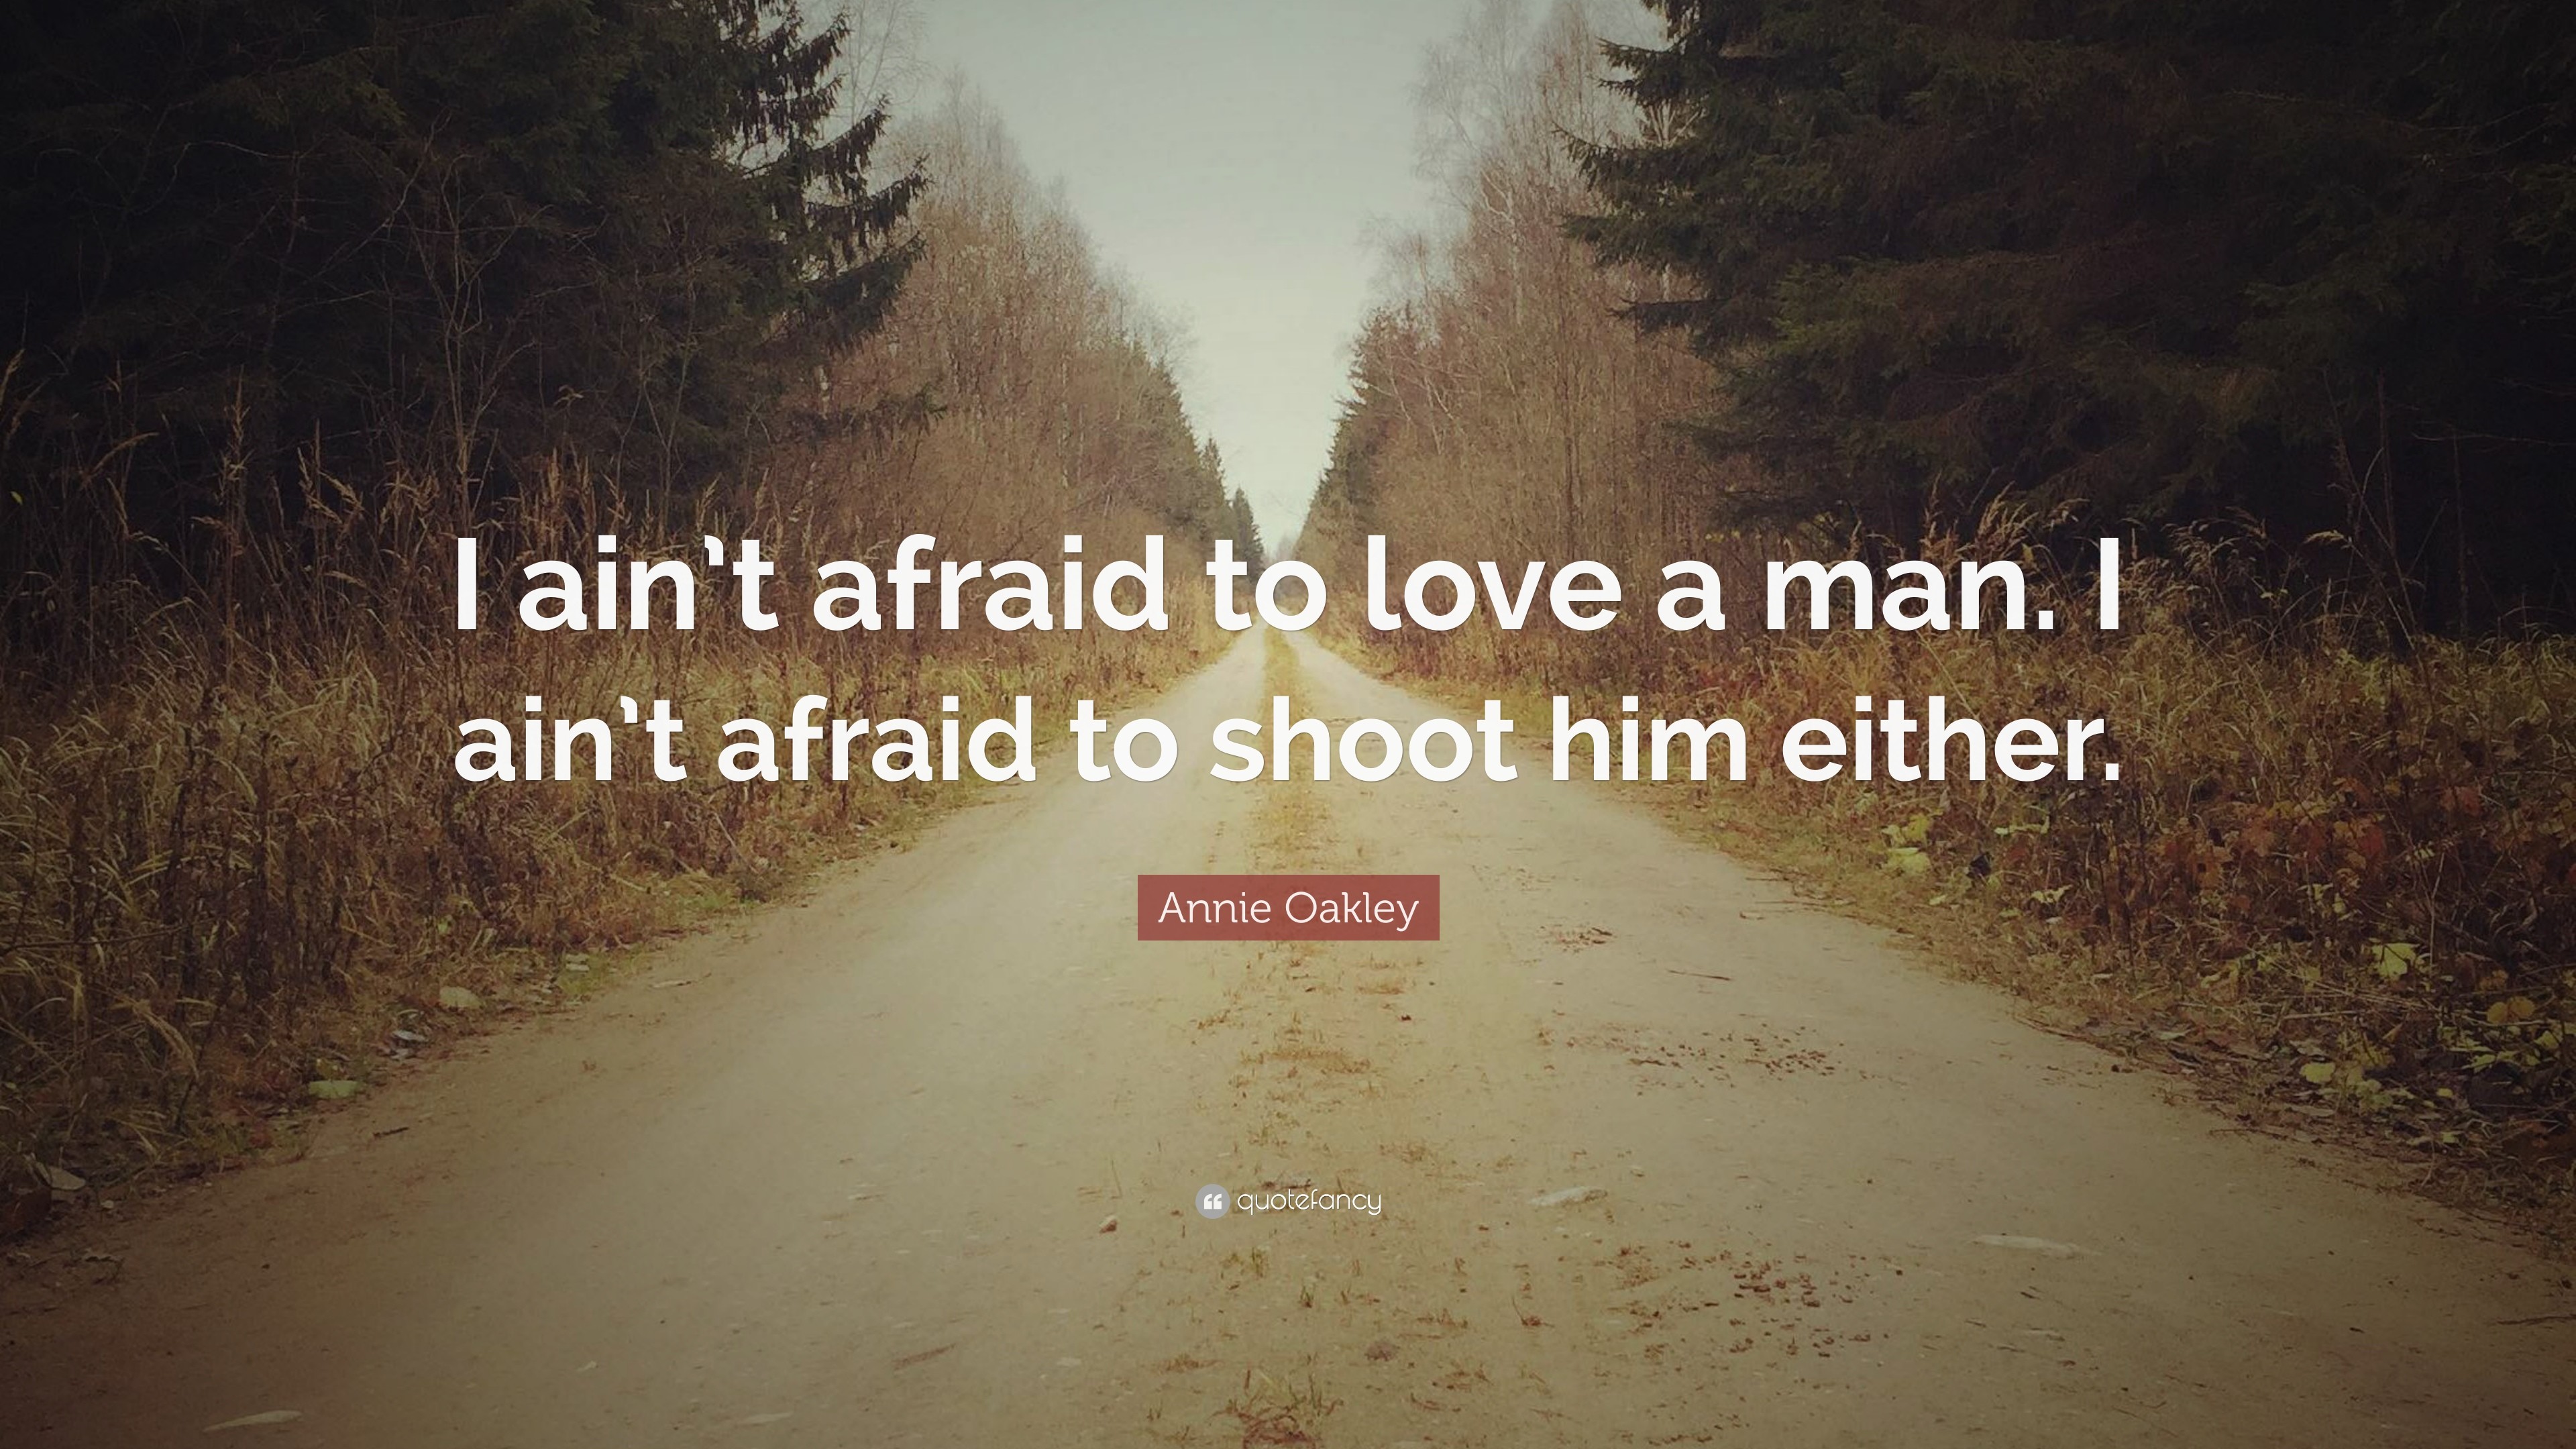 3840x2160 Annie Oakley Quote: “I ain't afraid to love a man. I